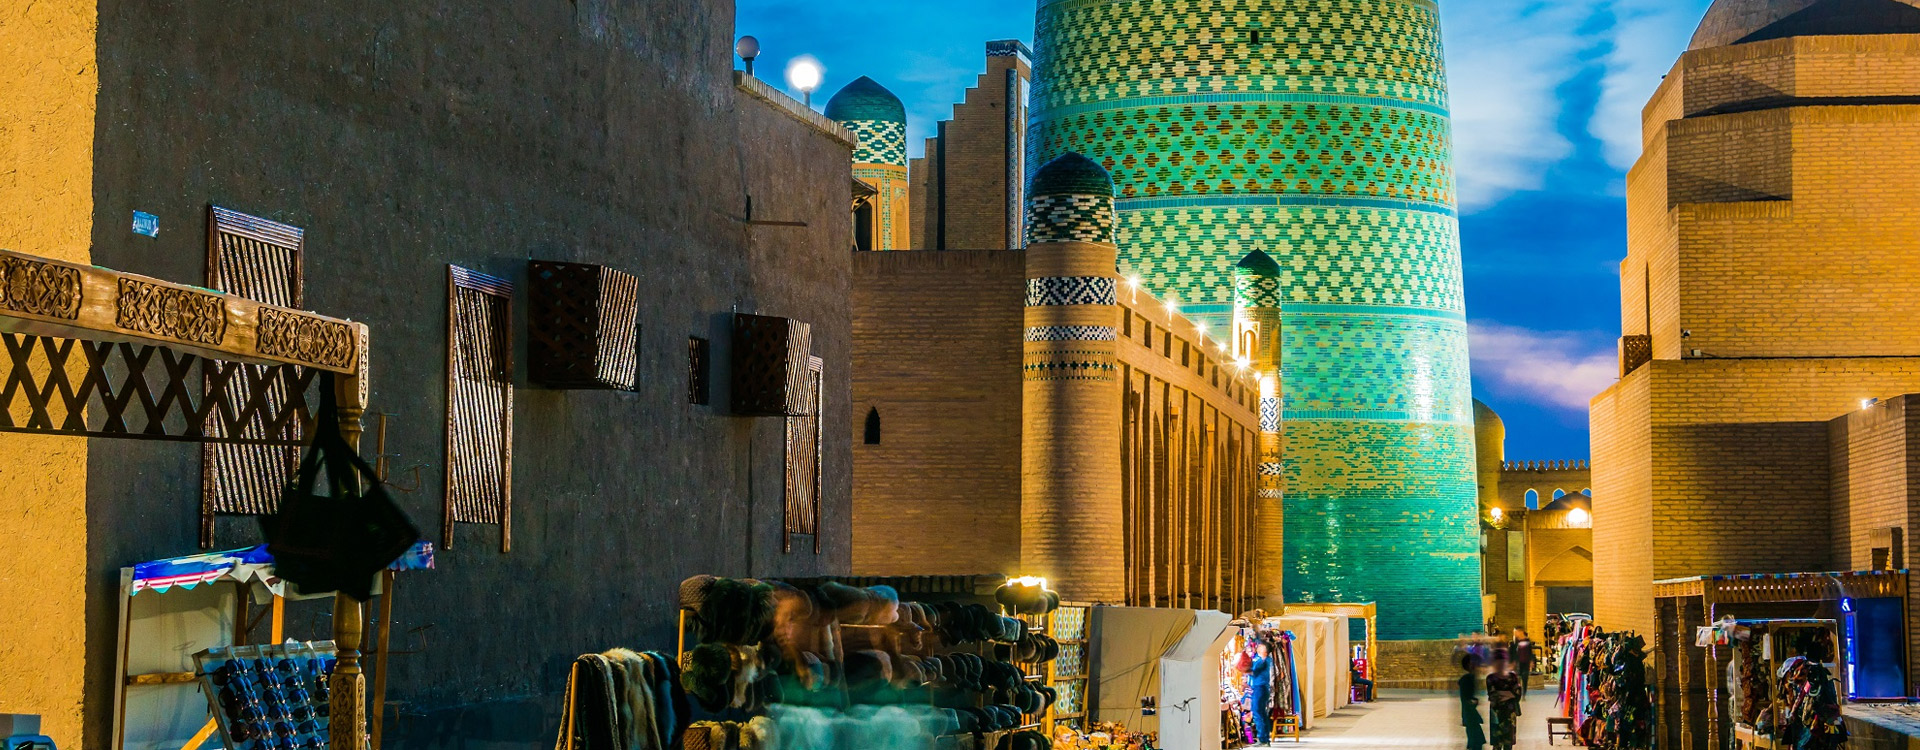 Khiva Multi-Day & Extended Tours